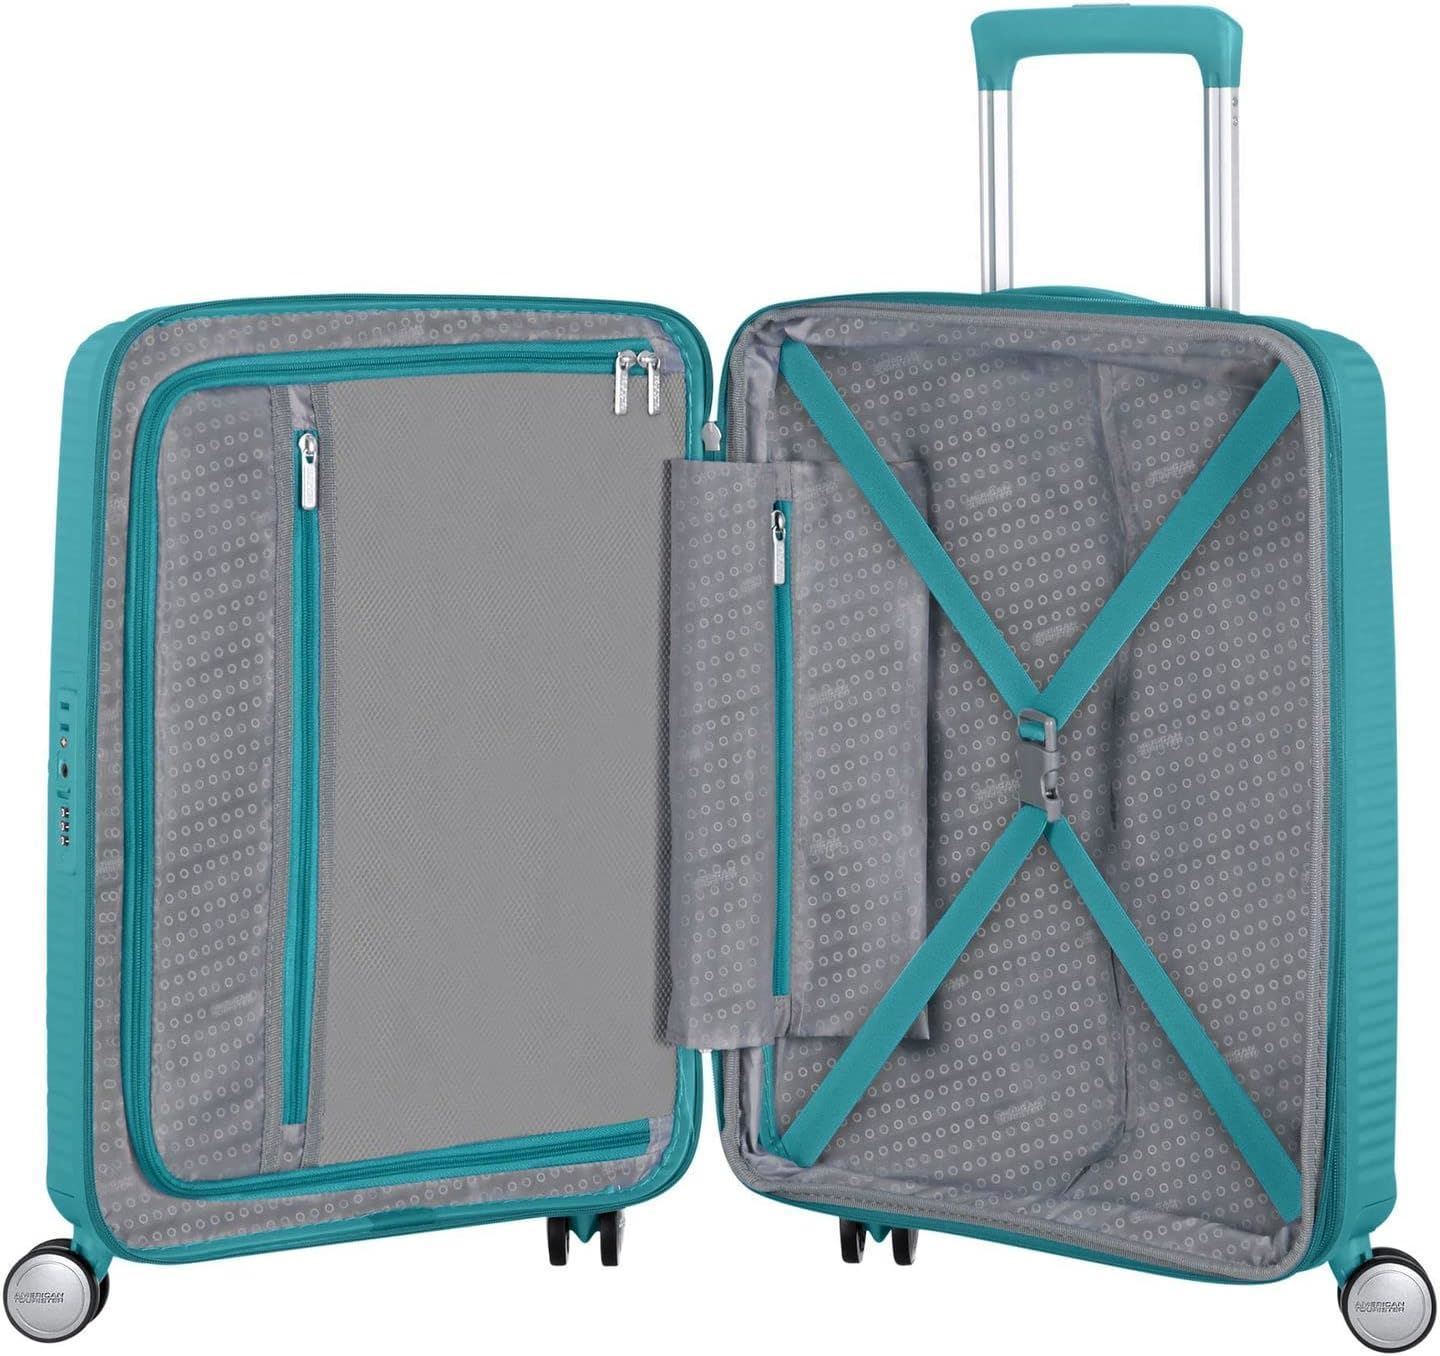 American Tourister Soundbox maleta cabina expandible Turquoise 3 años de garantia - Imagen 5